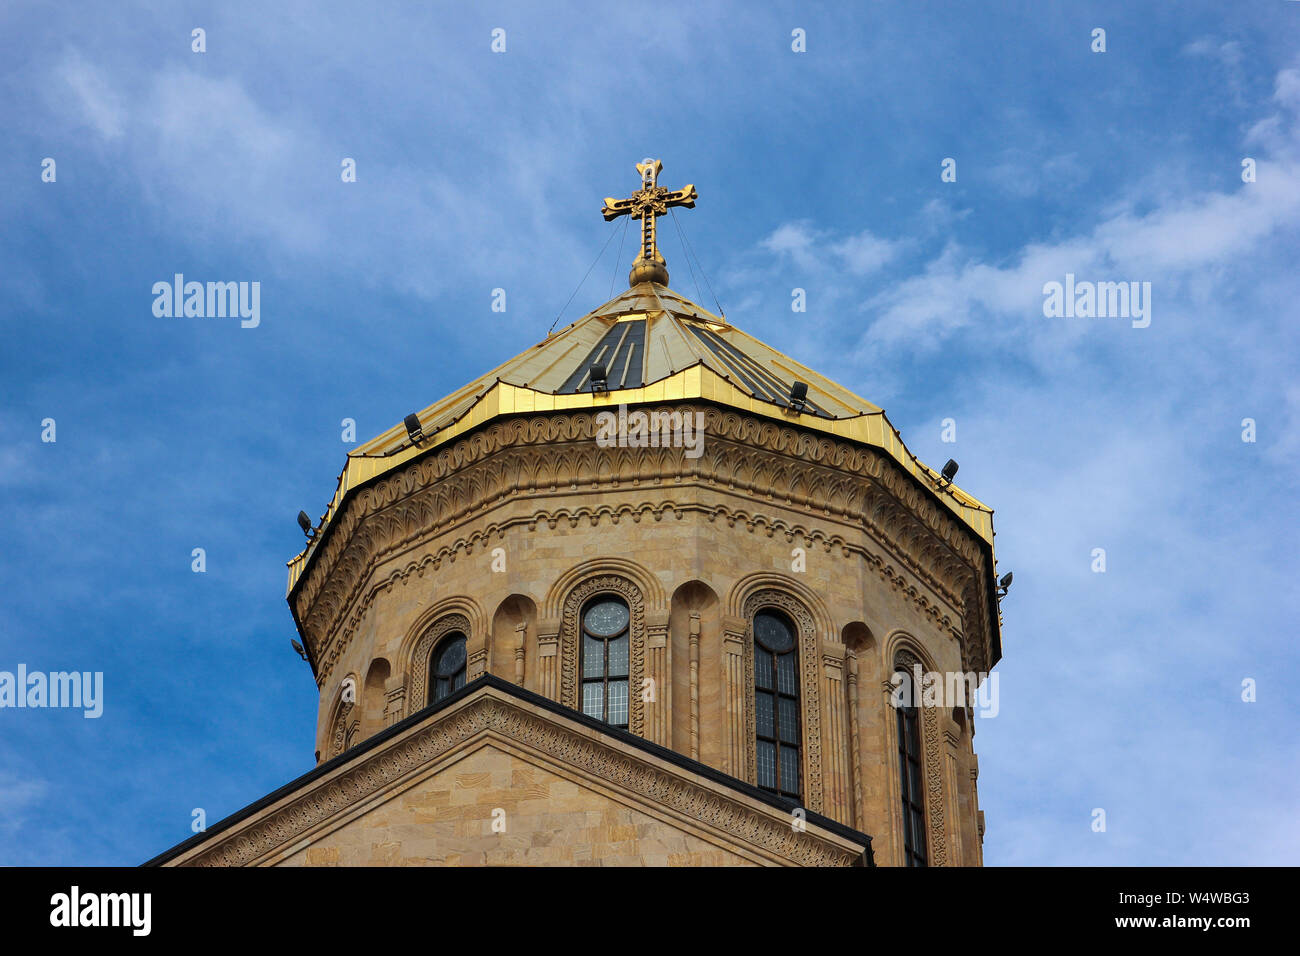 La Cattedrale del Grand Trinità. Il terzo più grande tempio ortodosso nel mondo costruito per commemorare i 1500 anni del Patriarcato georgiano. Più su Foto Stock